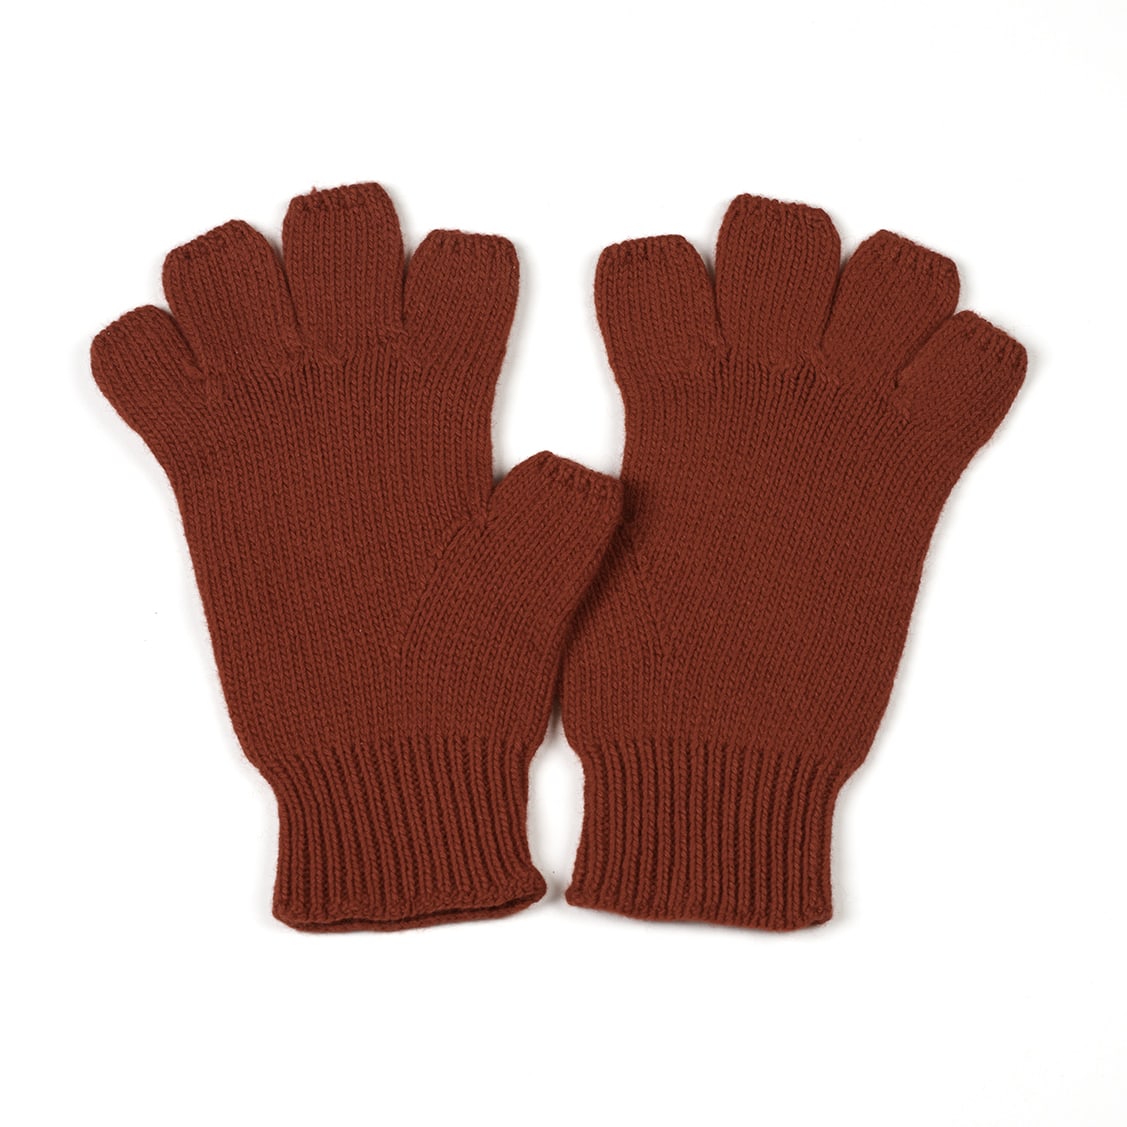 The Men's Fingerless Gloves Ruby